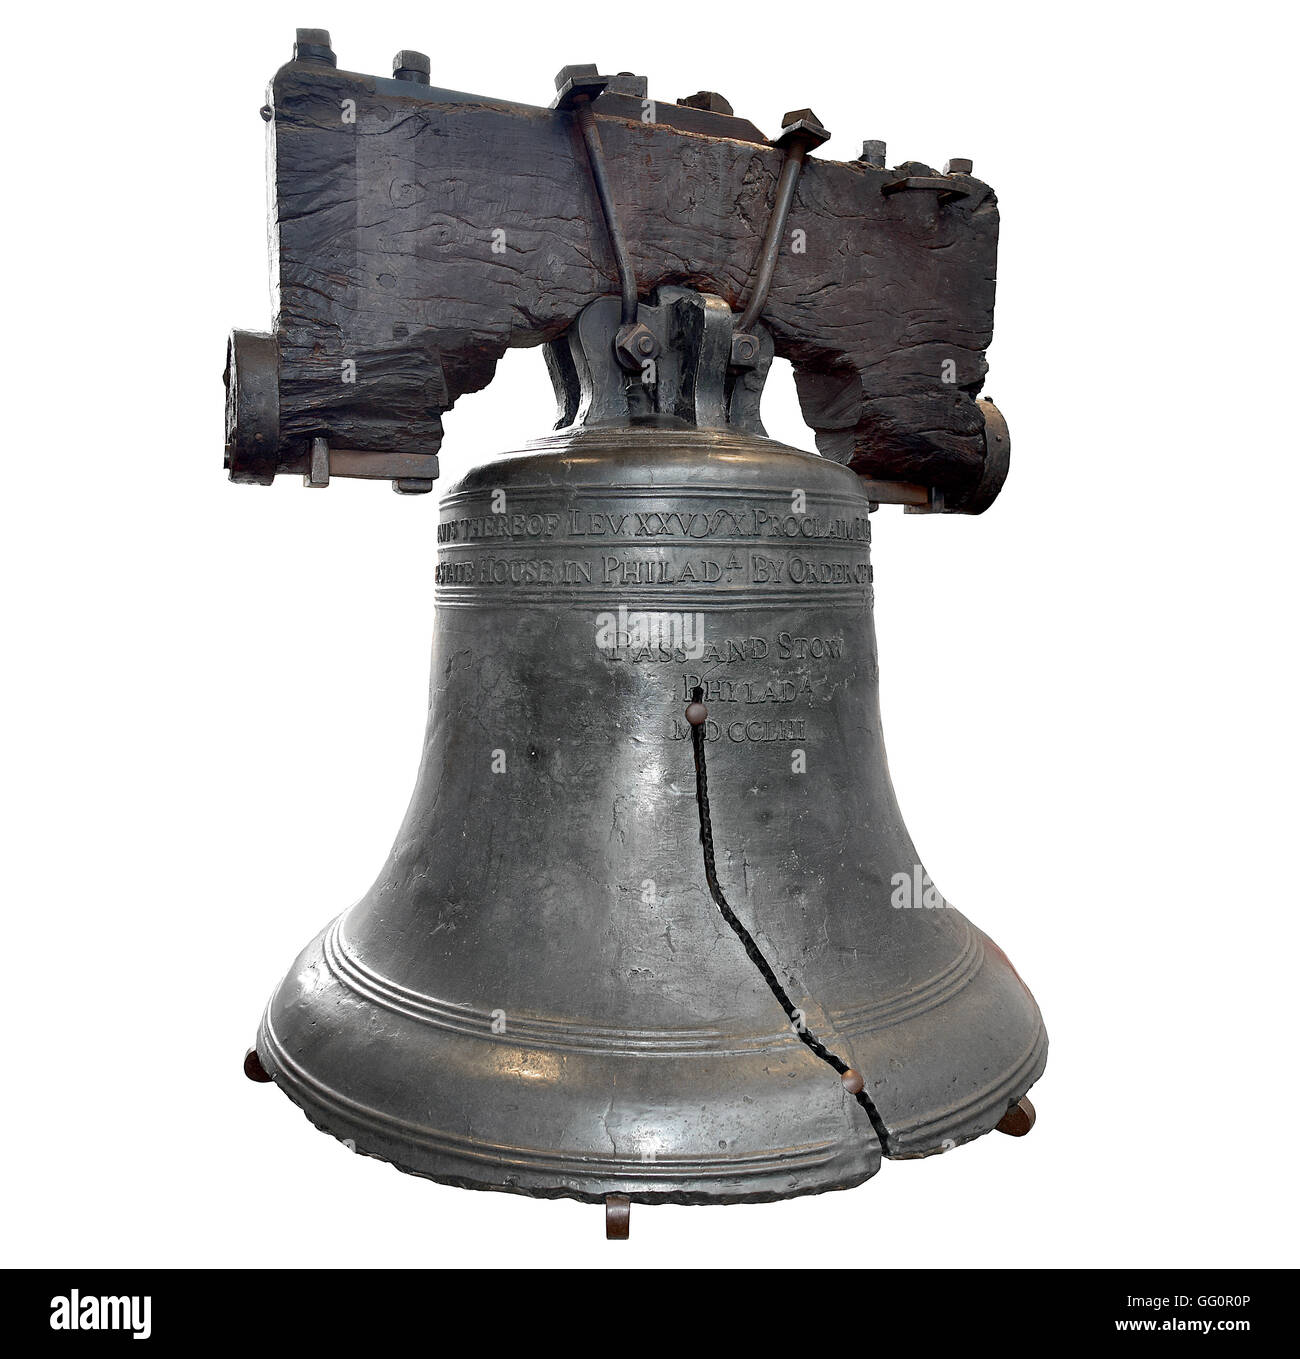 La campana de la libertad estadounidense en Filadelfia aislado sobre fondo blanco. Foto de stock